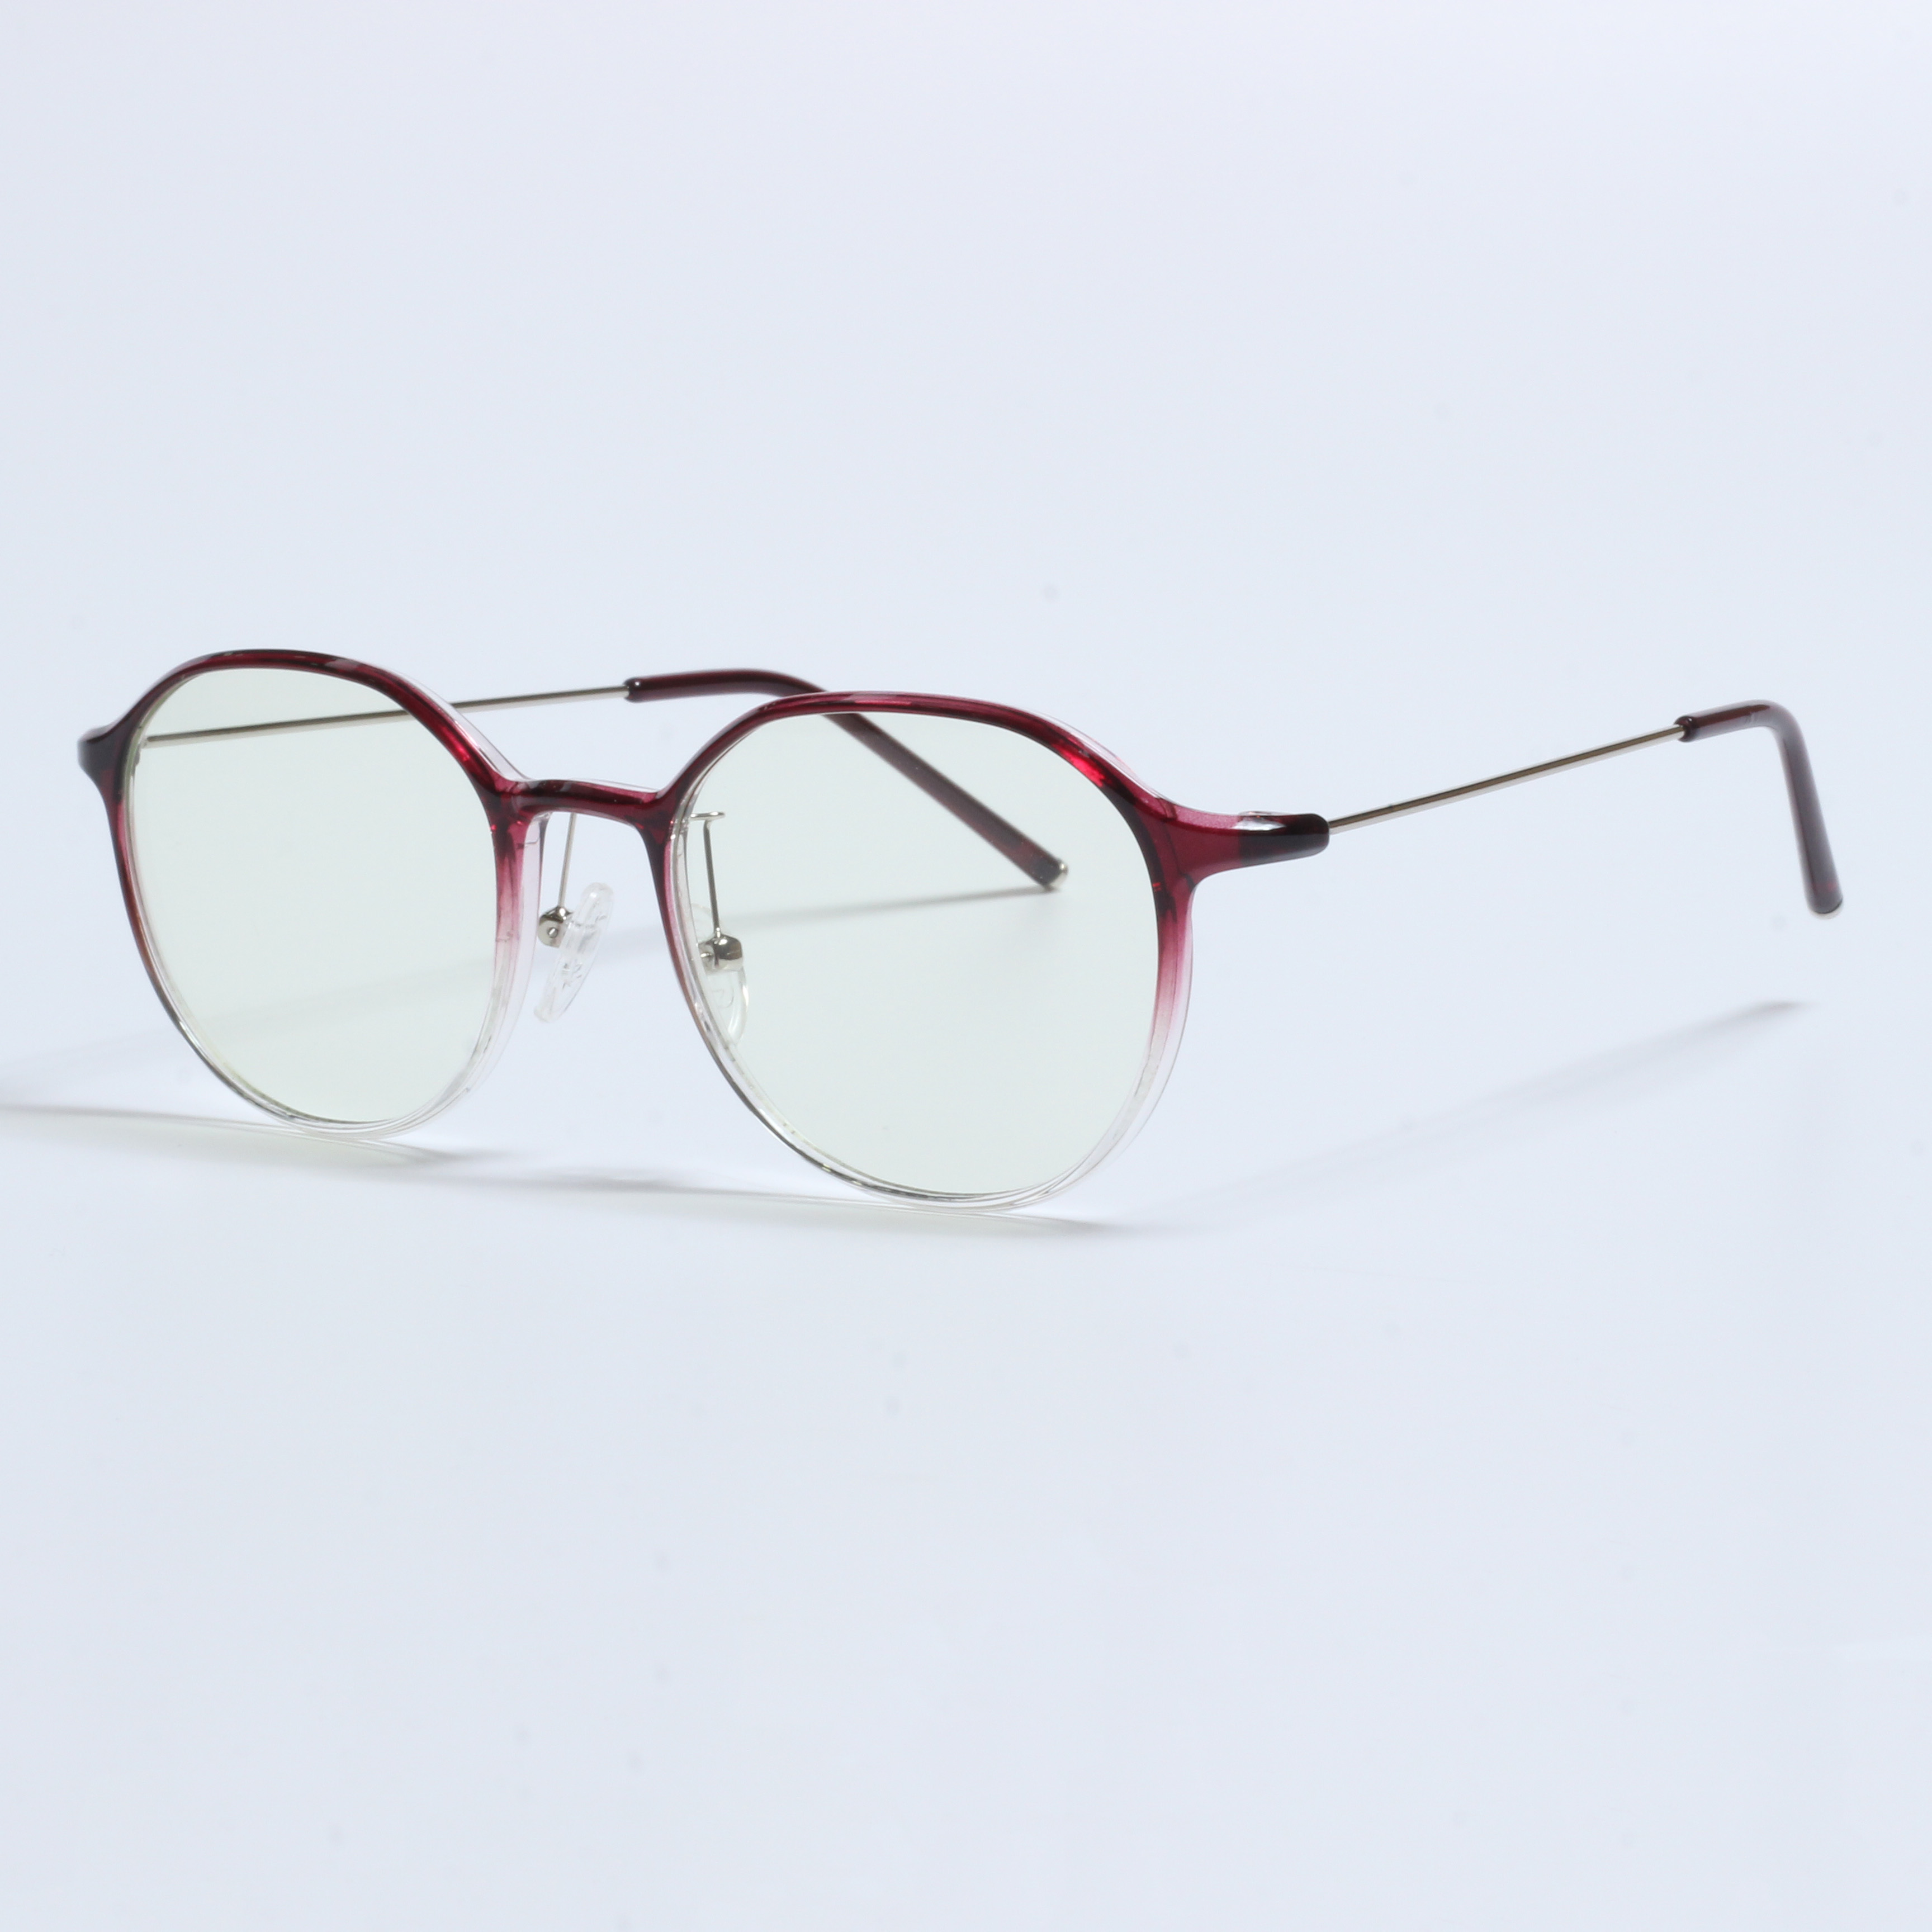 IVintage Thick Gafas Opticas De Hombres Transparent TR90 Frames (11)